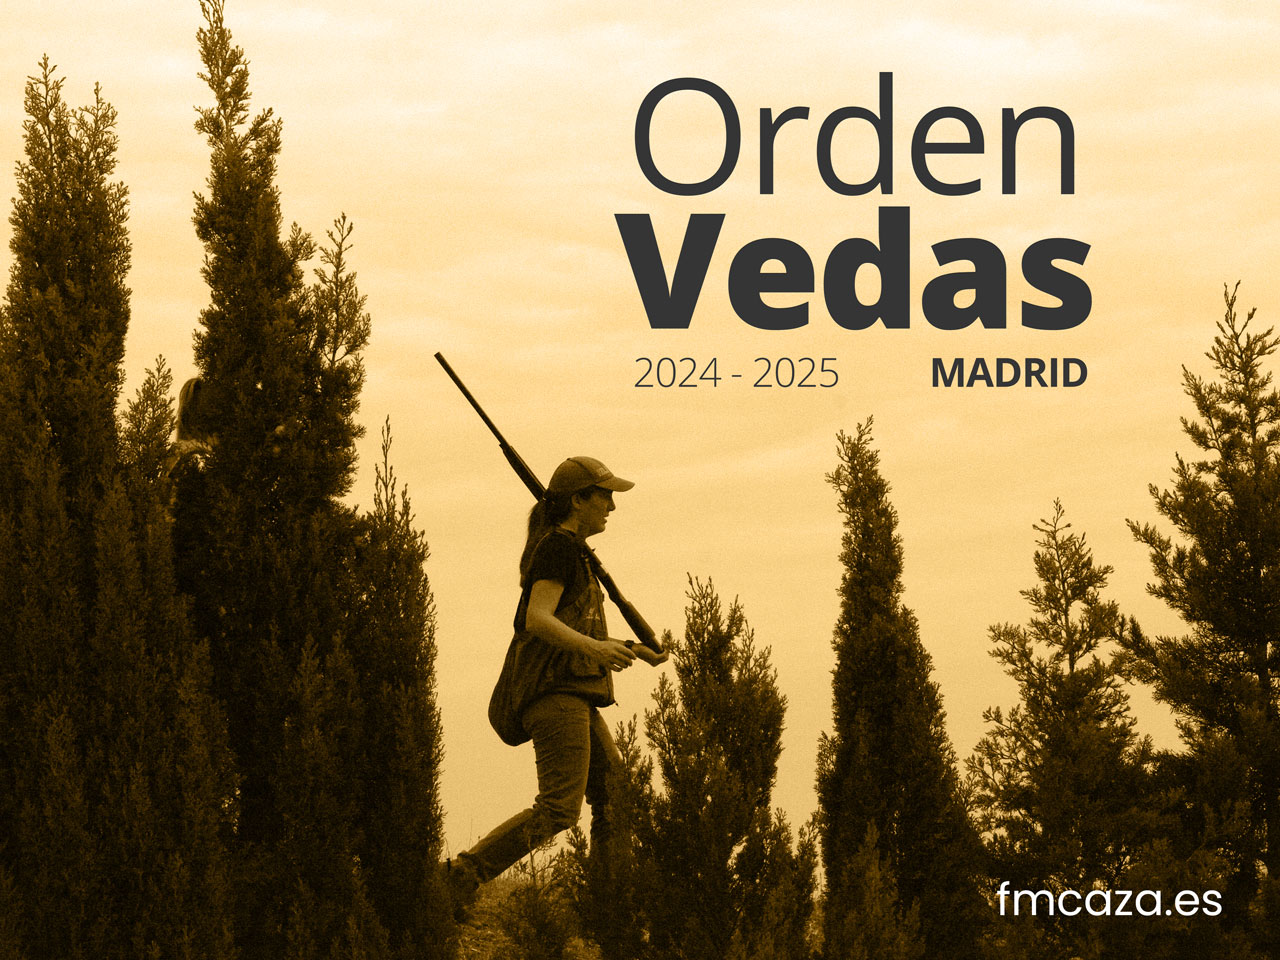 Publicada la Orden de vedas 2024-2025 de Madrid